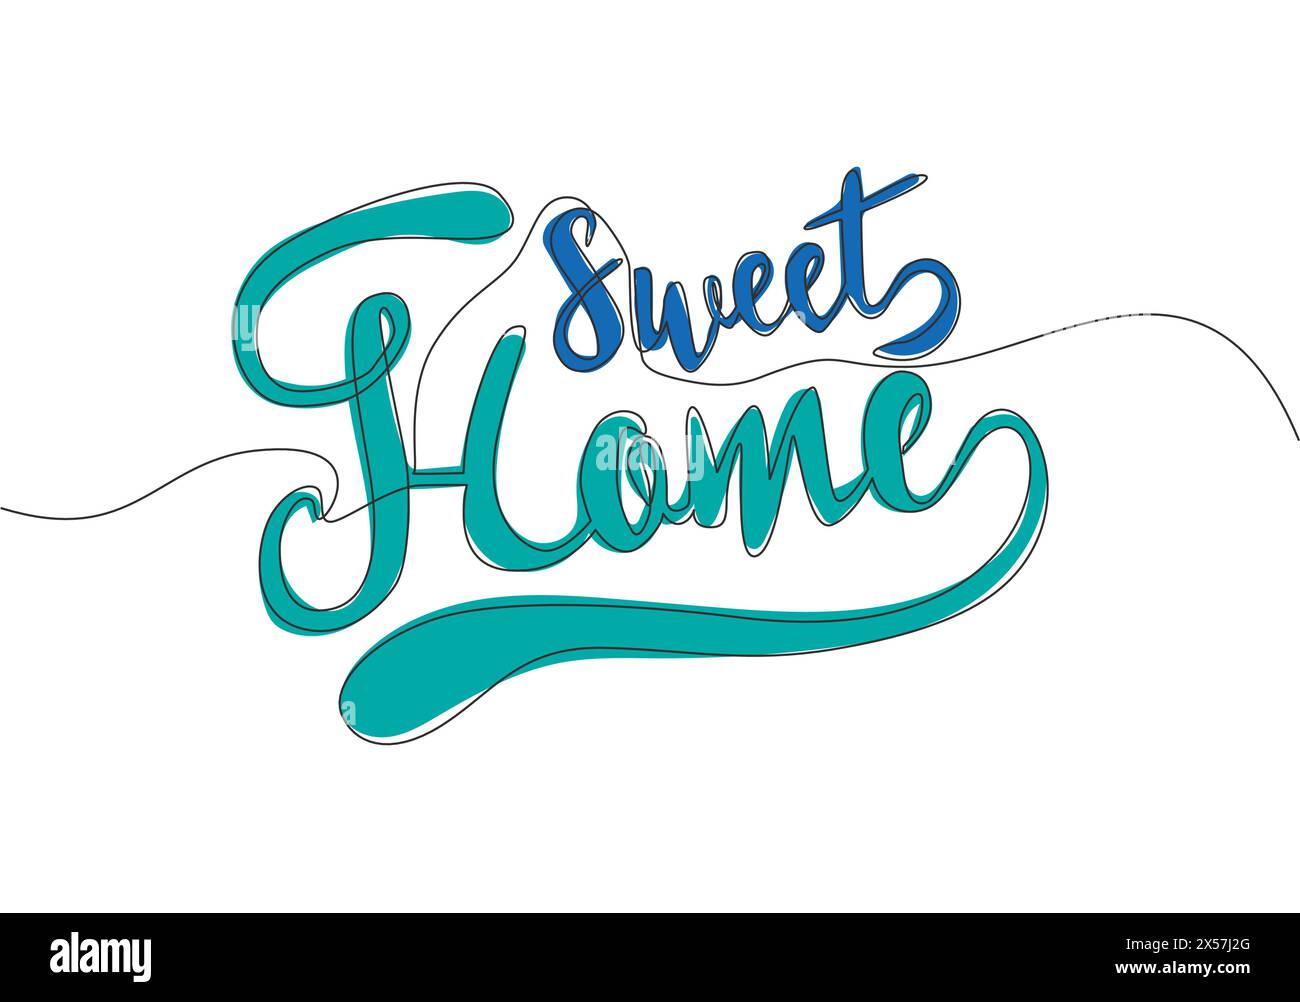 Disegno a linea singola continua di citazioni tipografiche motivazionali e ispiratrici - Home Sweet Home. Design calligrafico per stampa, cartoncino, ba Illustrazione Vettoriale